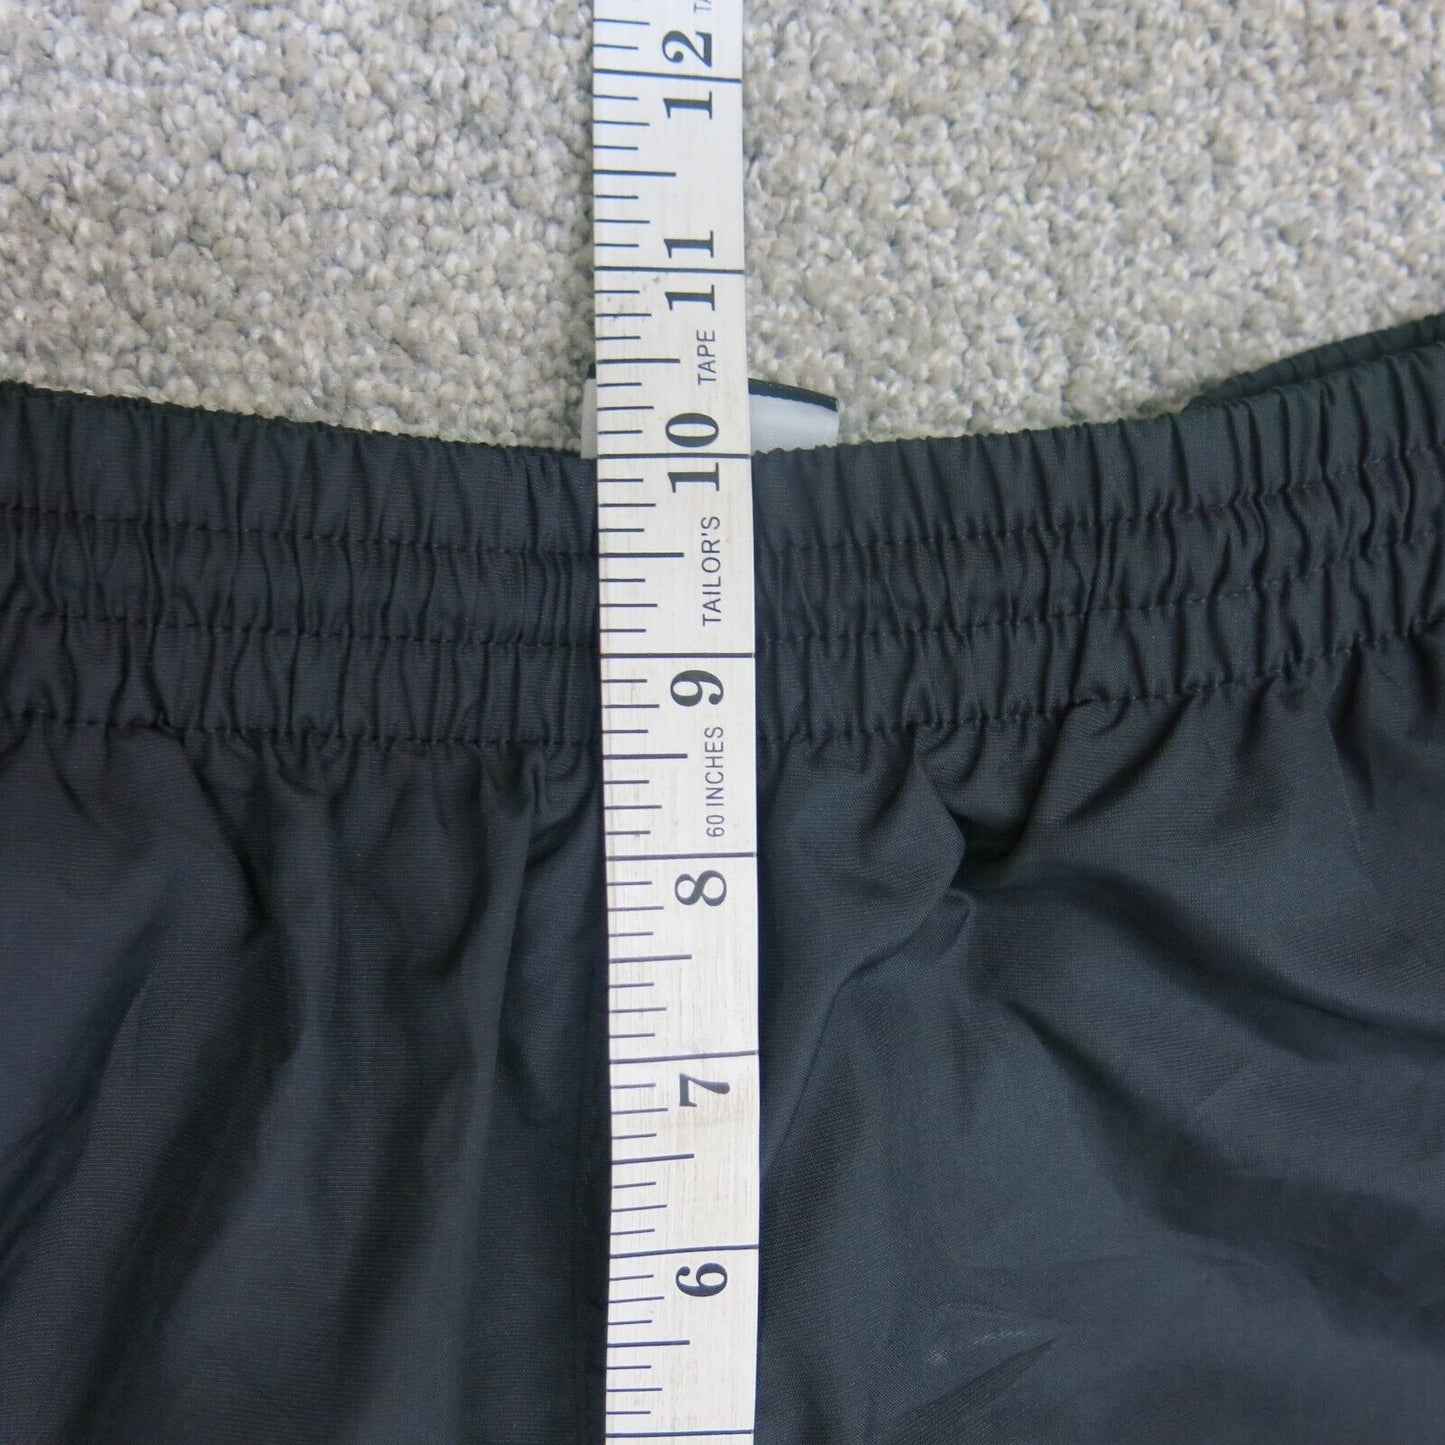 Nike Men Trouser Pant Elastic Waist White Stripe Running/Jogging Black Size S